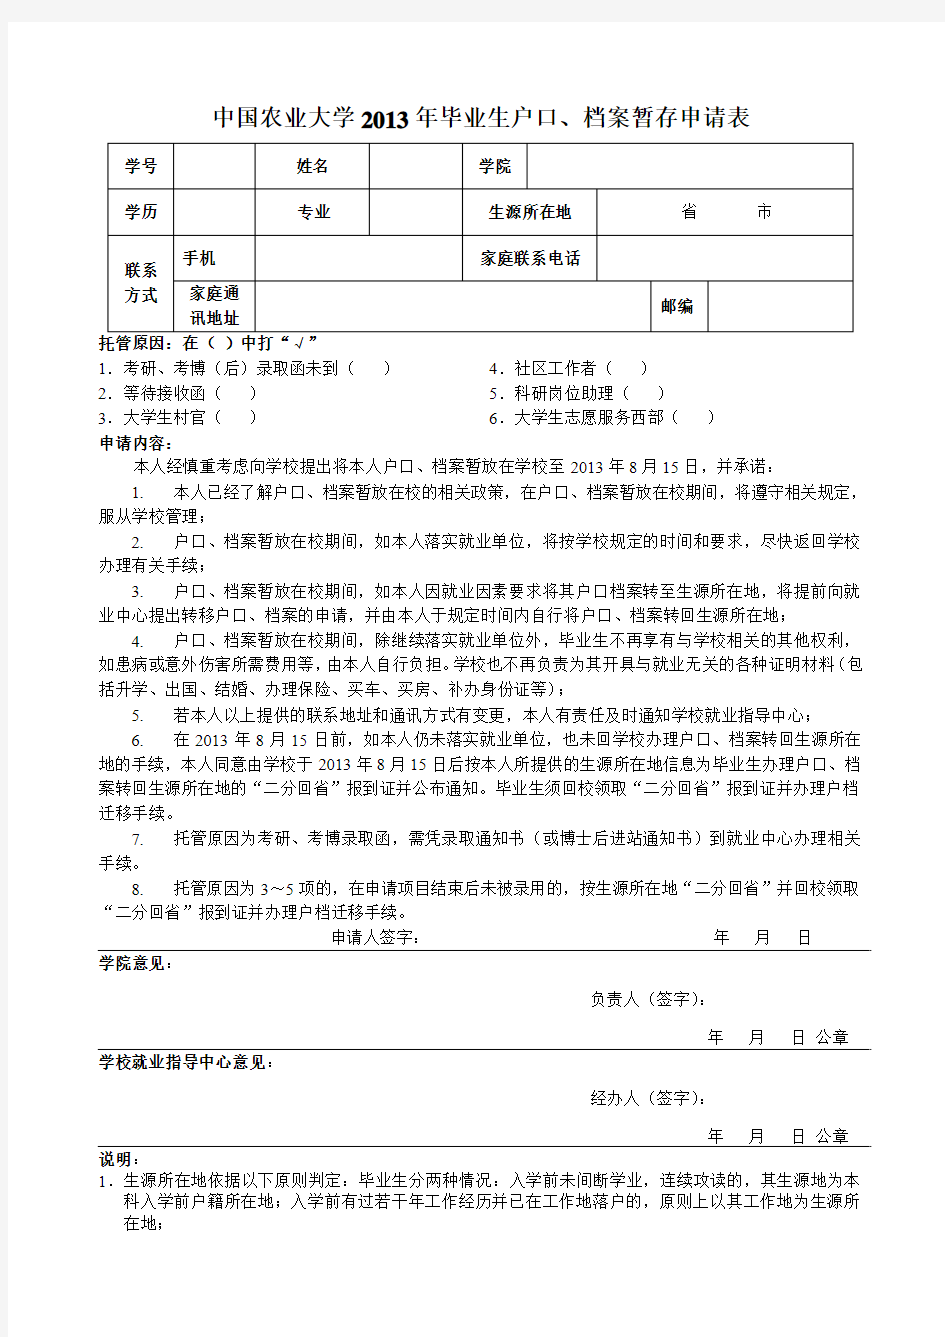 中国农业大学户口、档案暂存申请